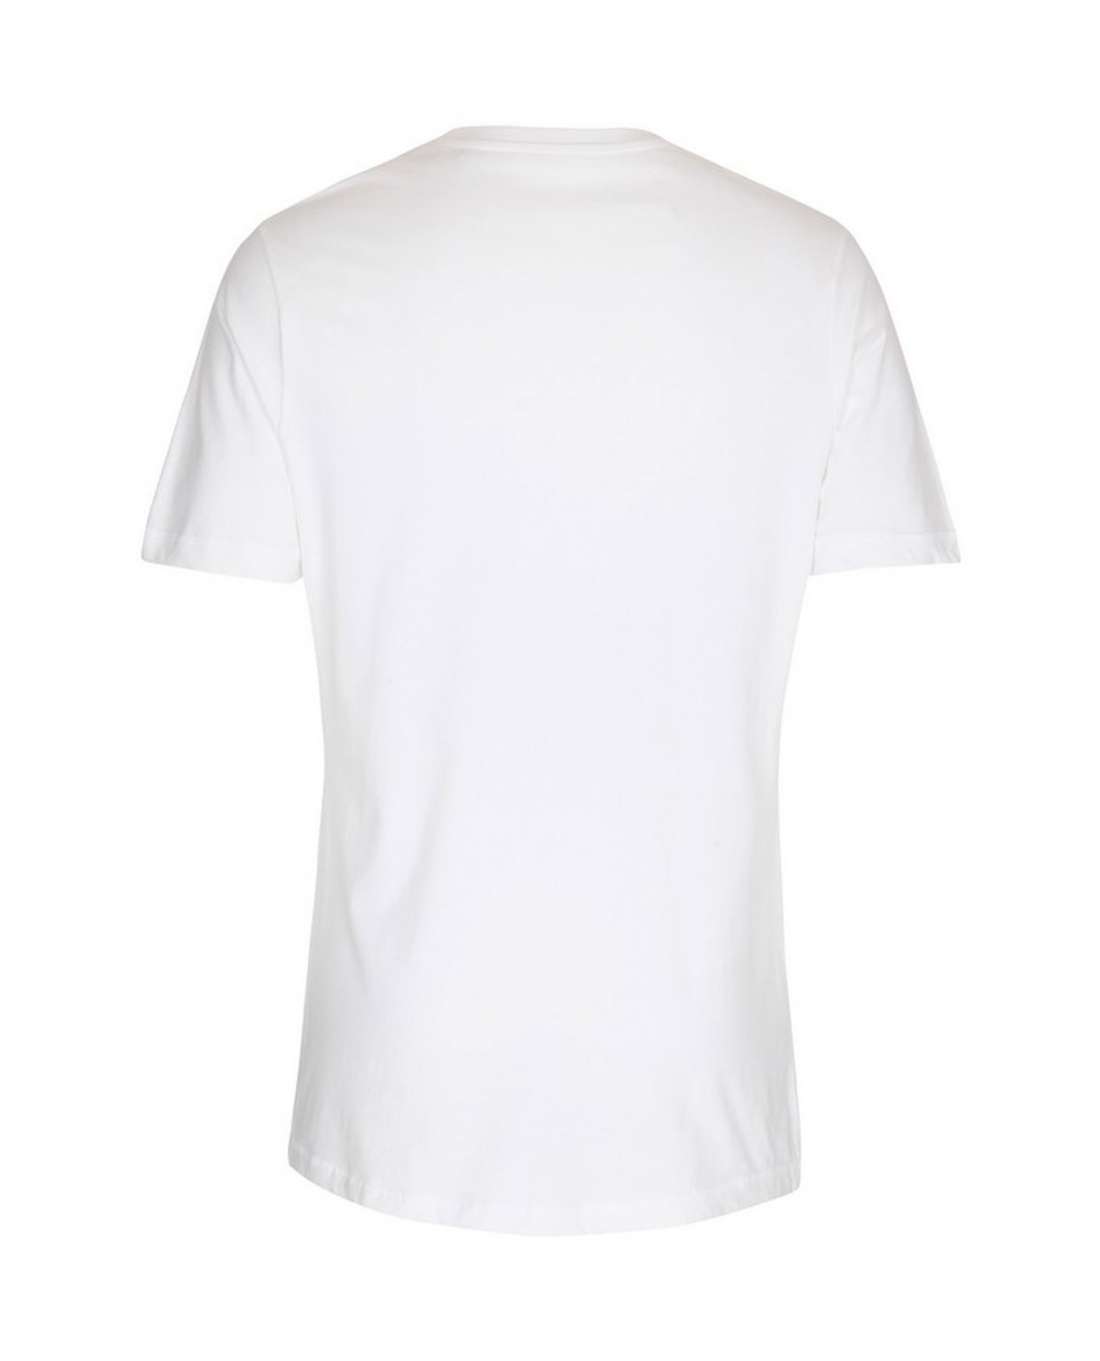 ST315 Miesten pitkähelmainen t-paita, Valkoinen